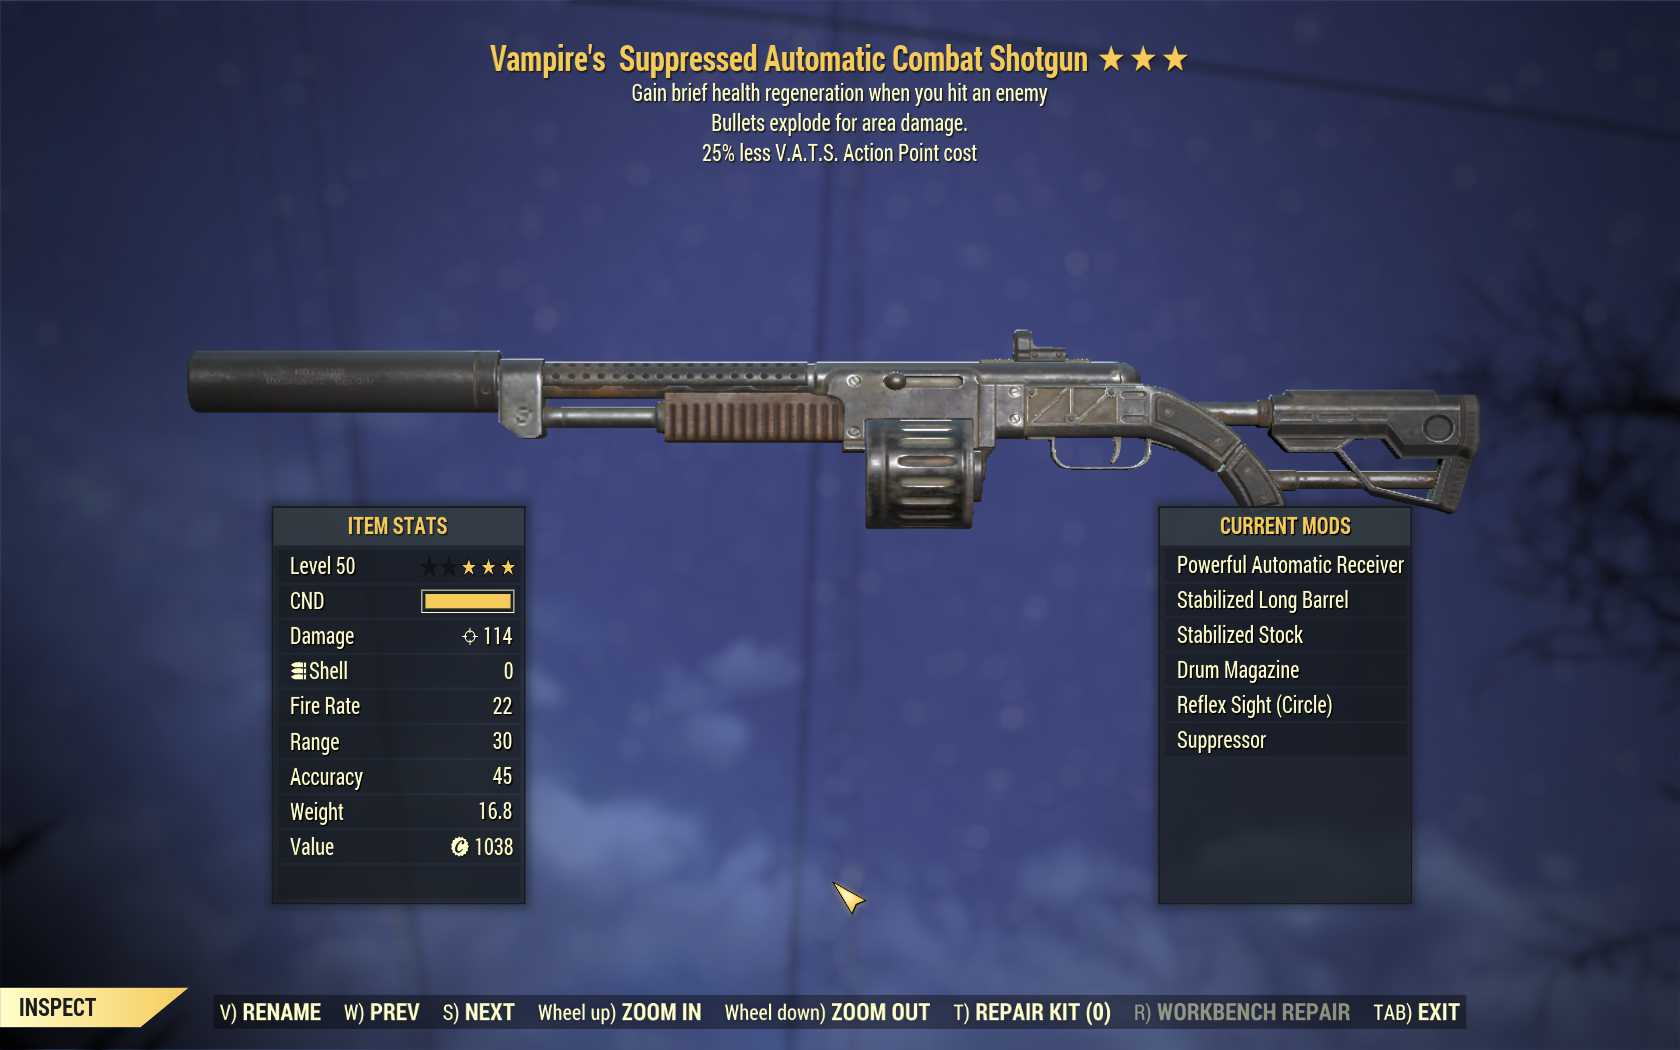 Vampire's Explosive Combat Shotgun (25% less VATS AP cost)